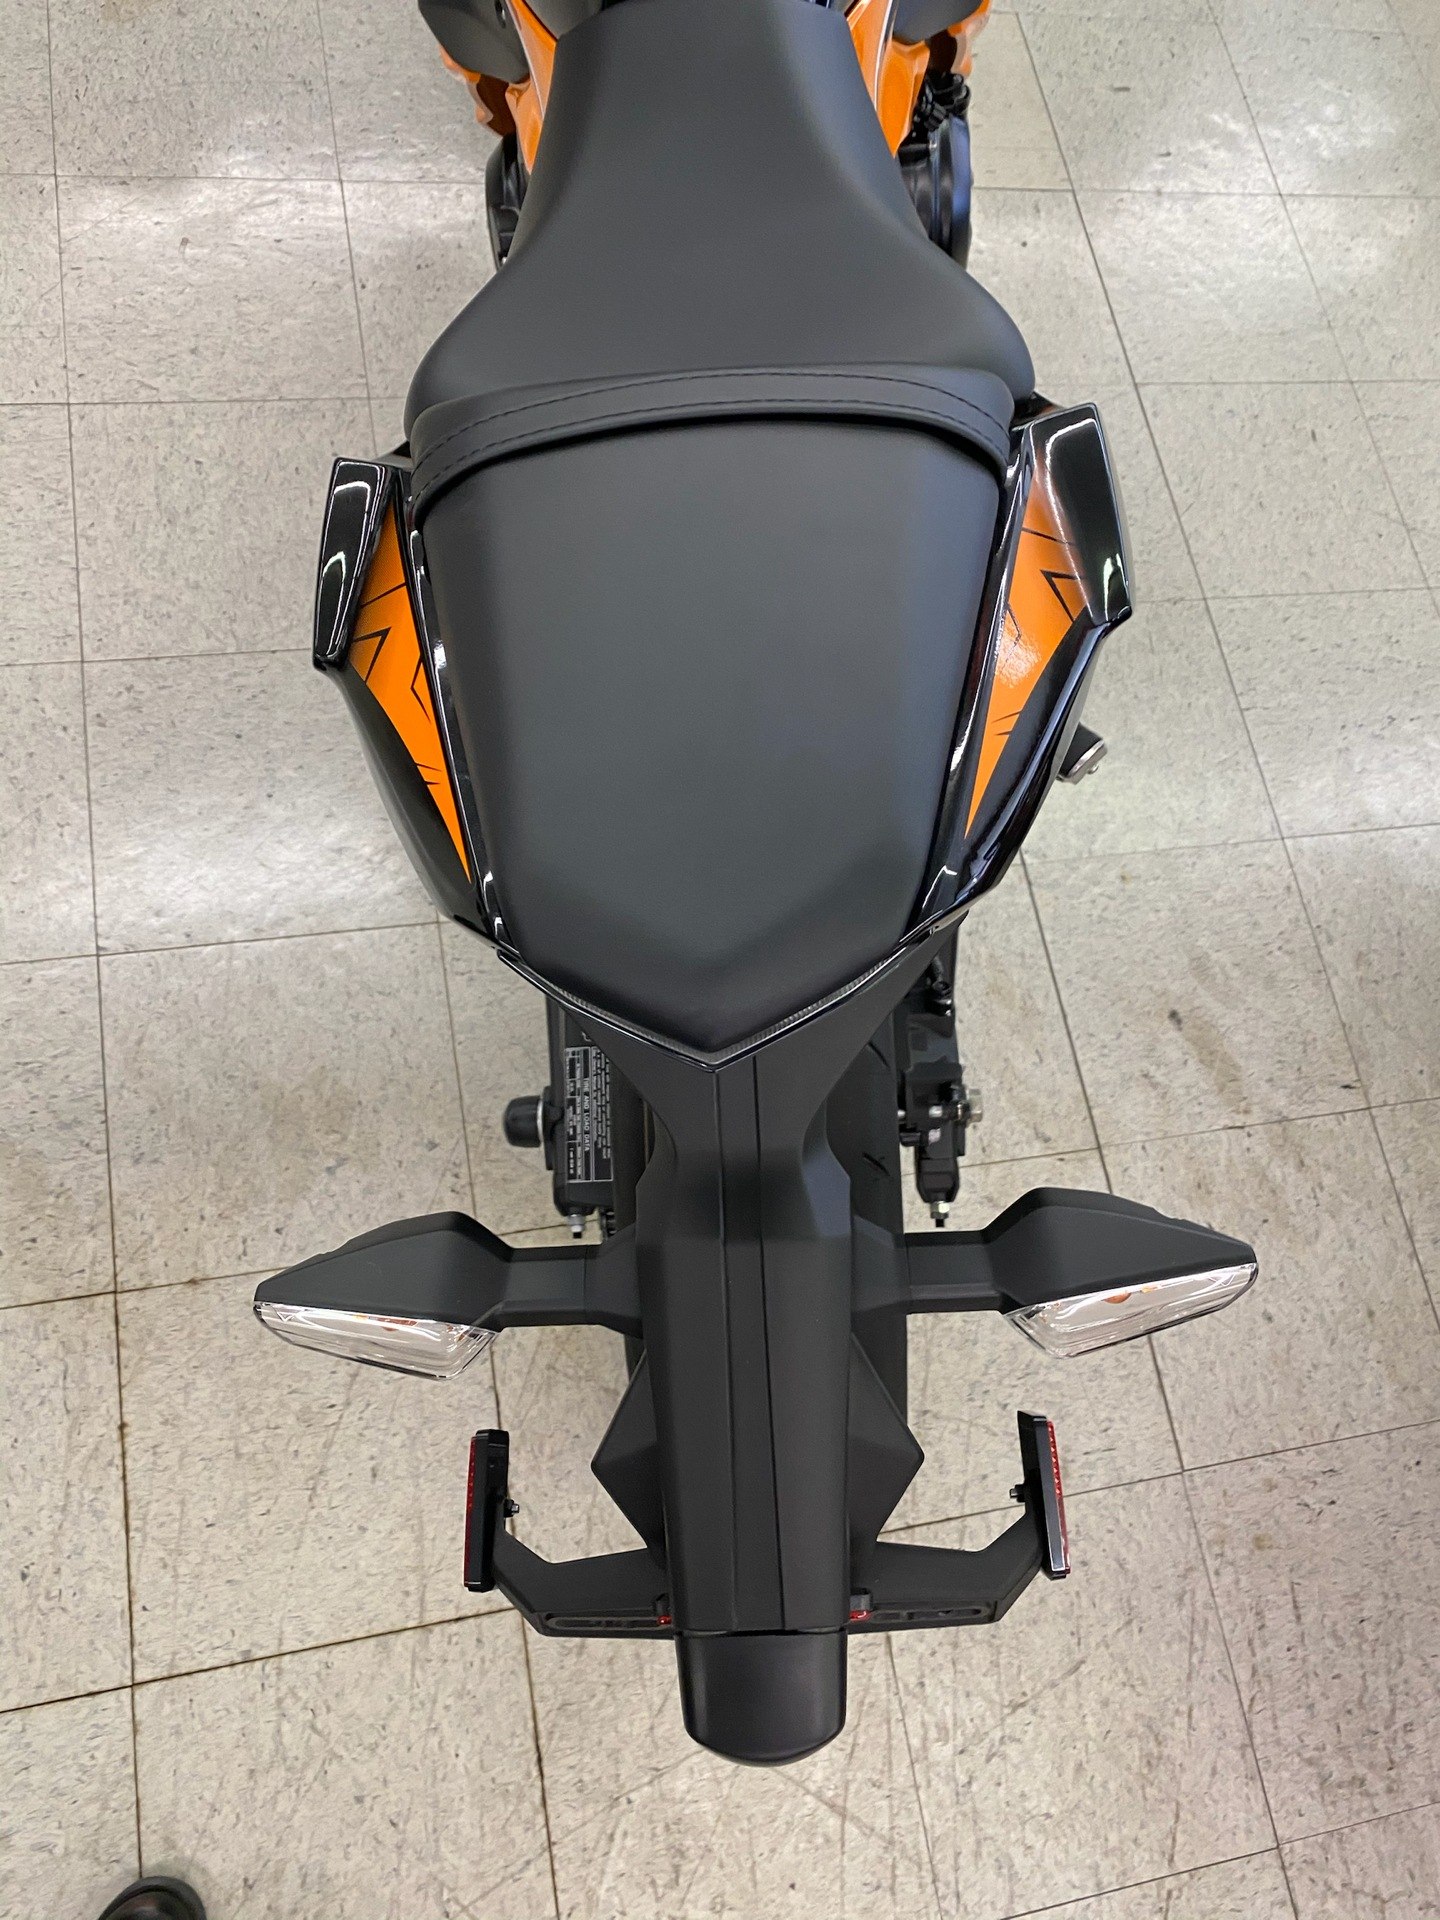 2019 Kawasaki Ninja 650 ABS 8